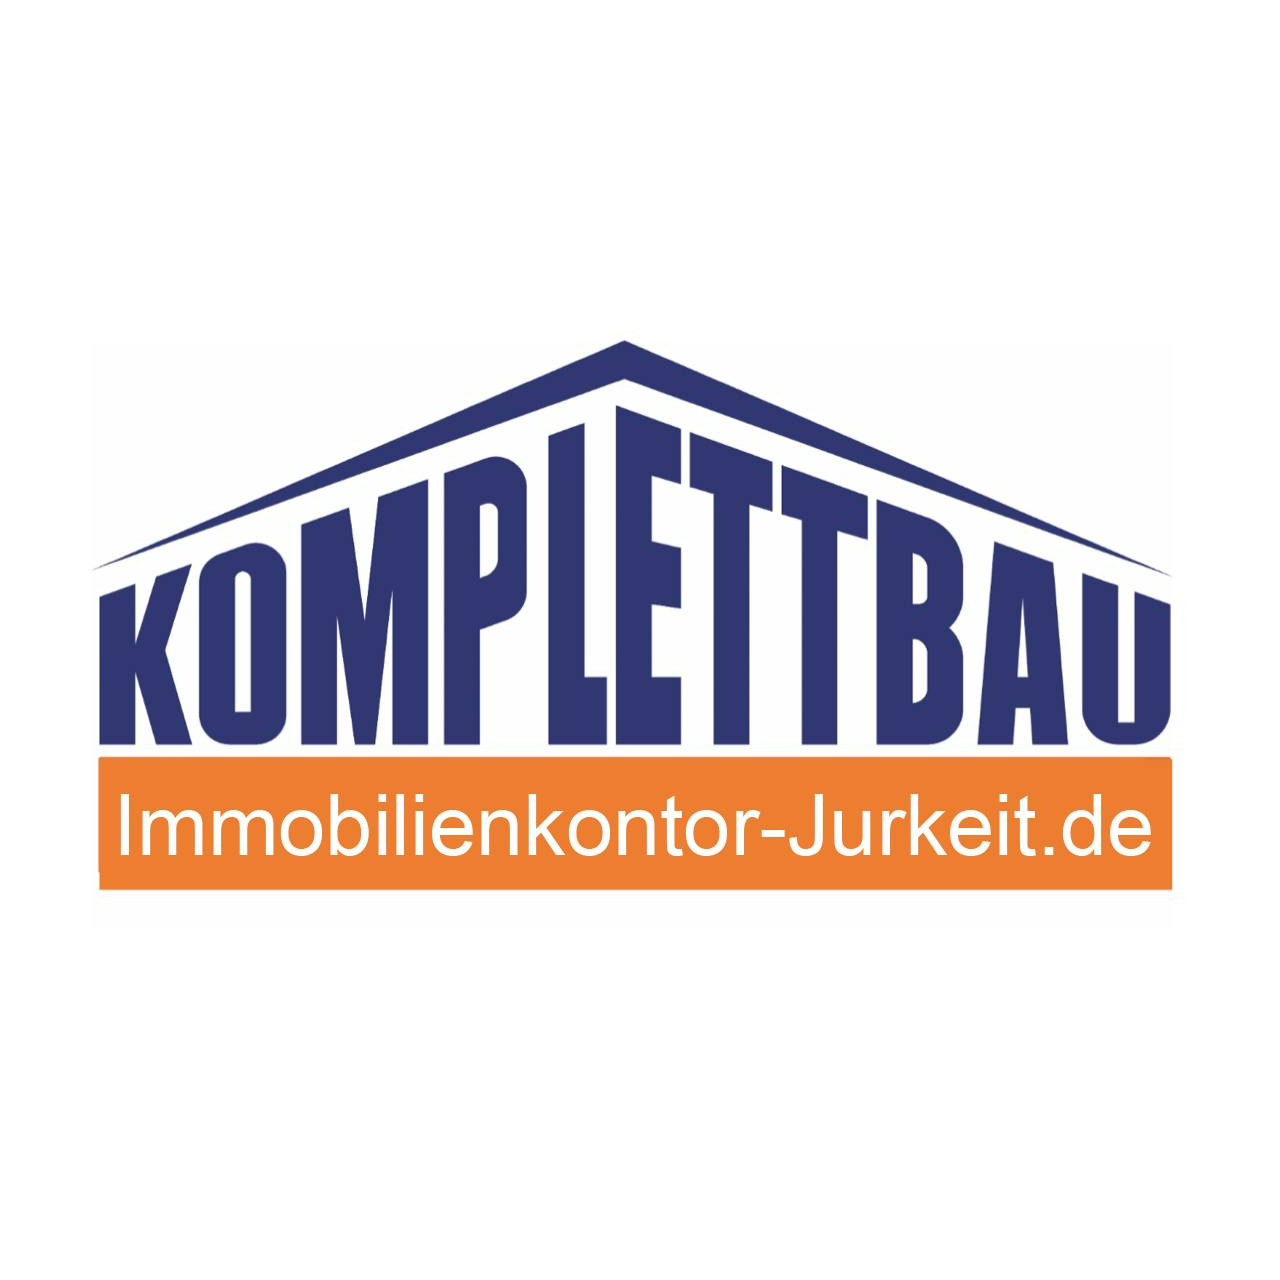 Jurkeit Komplettbau GmbH & Co. Grundstücks- und Bauträger KG  